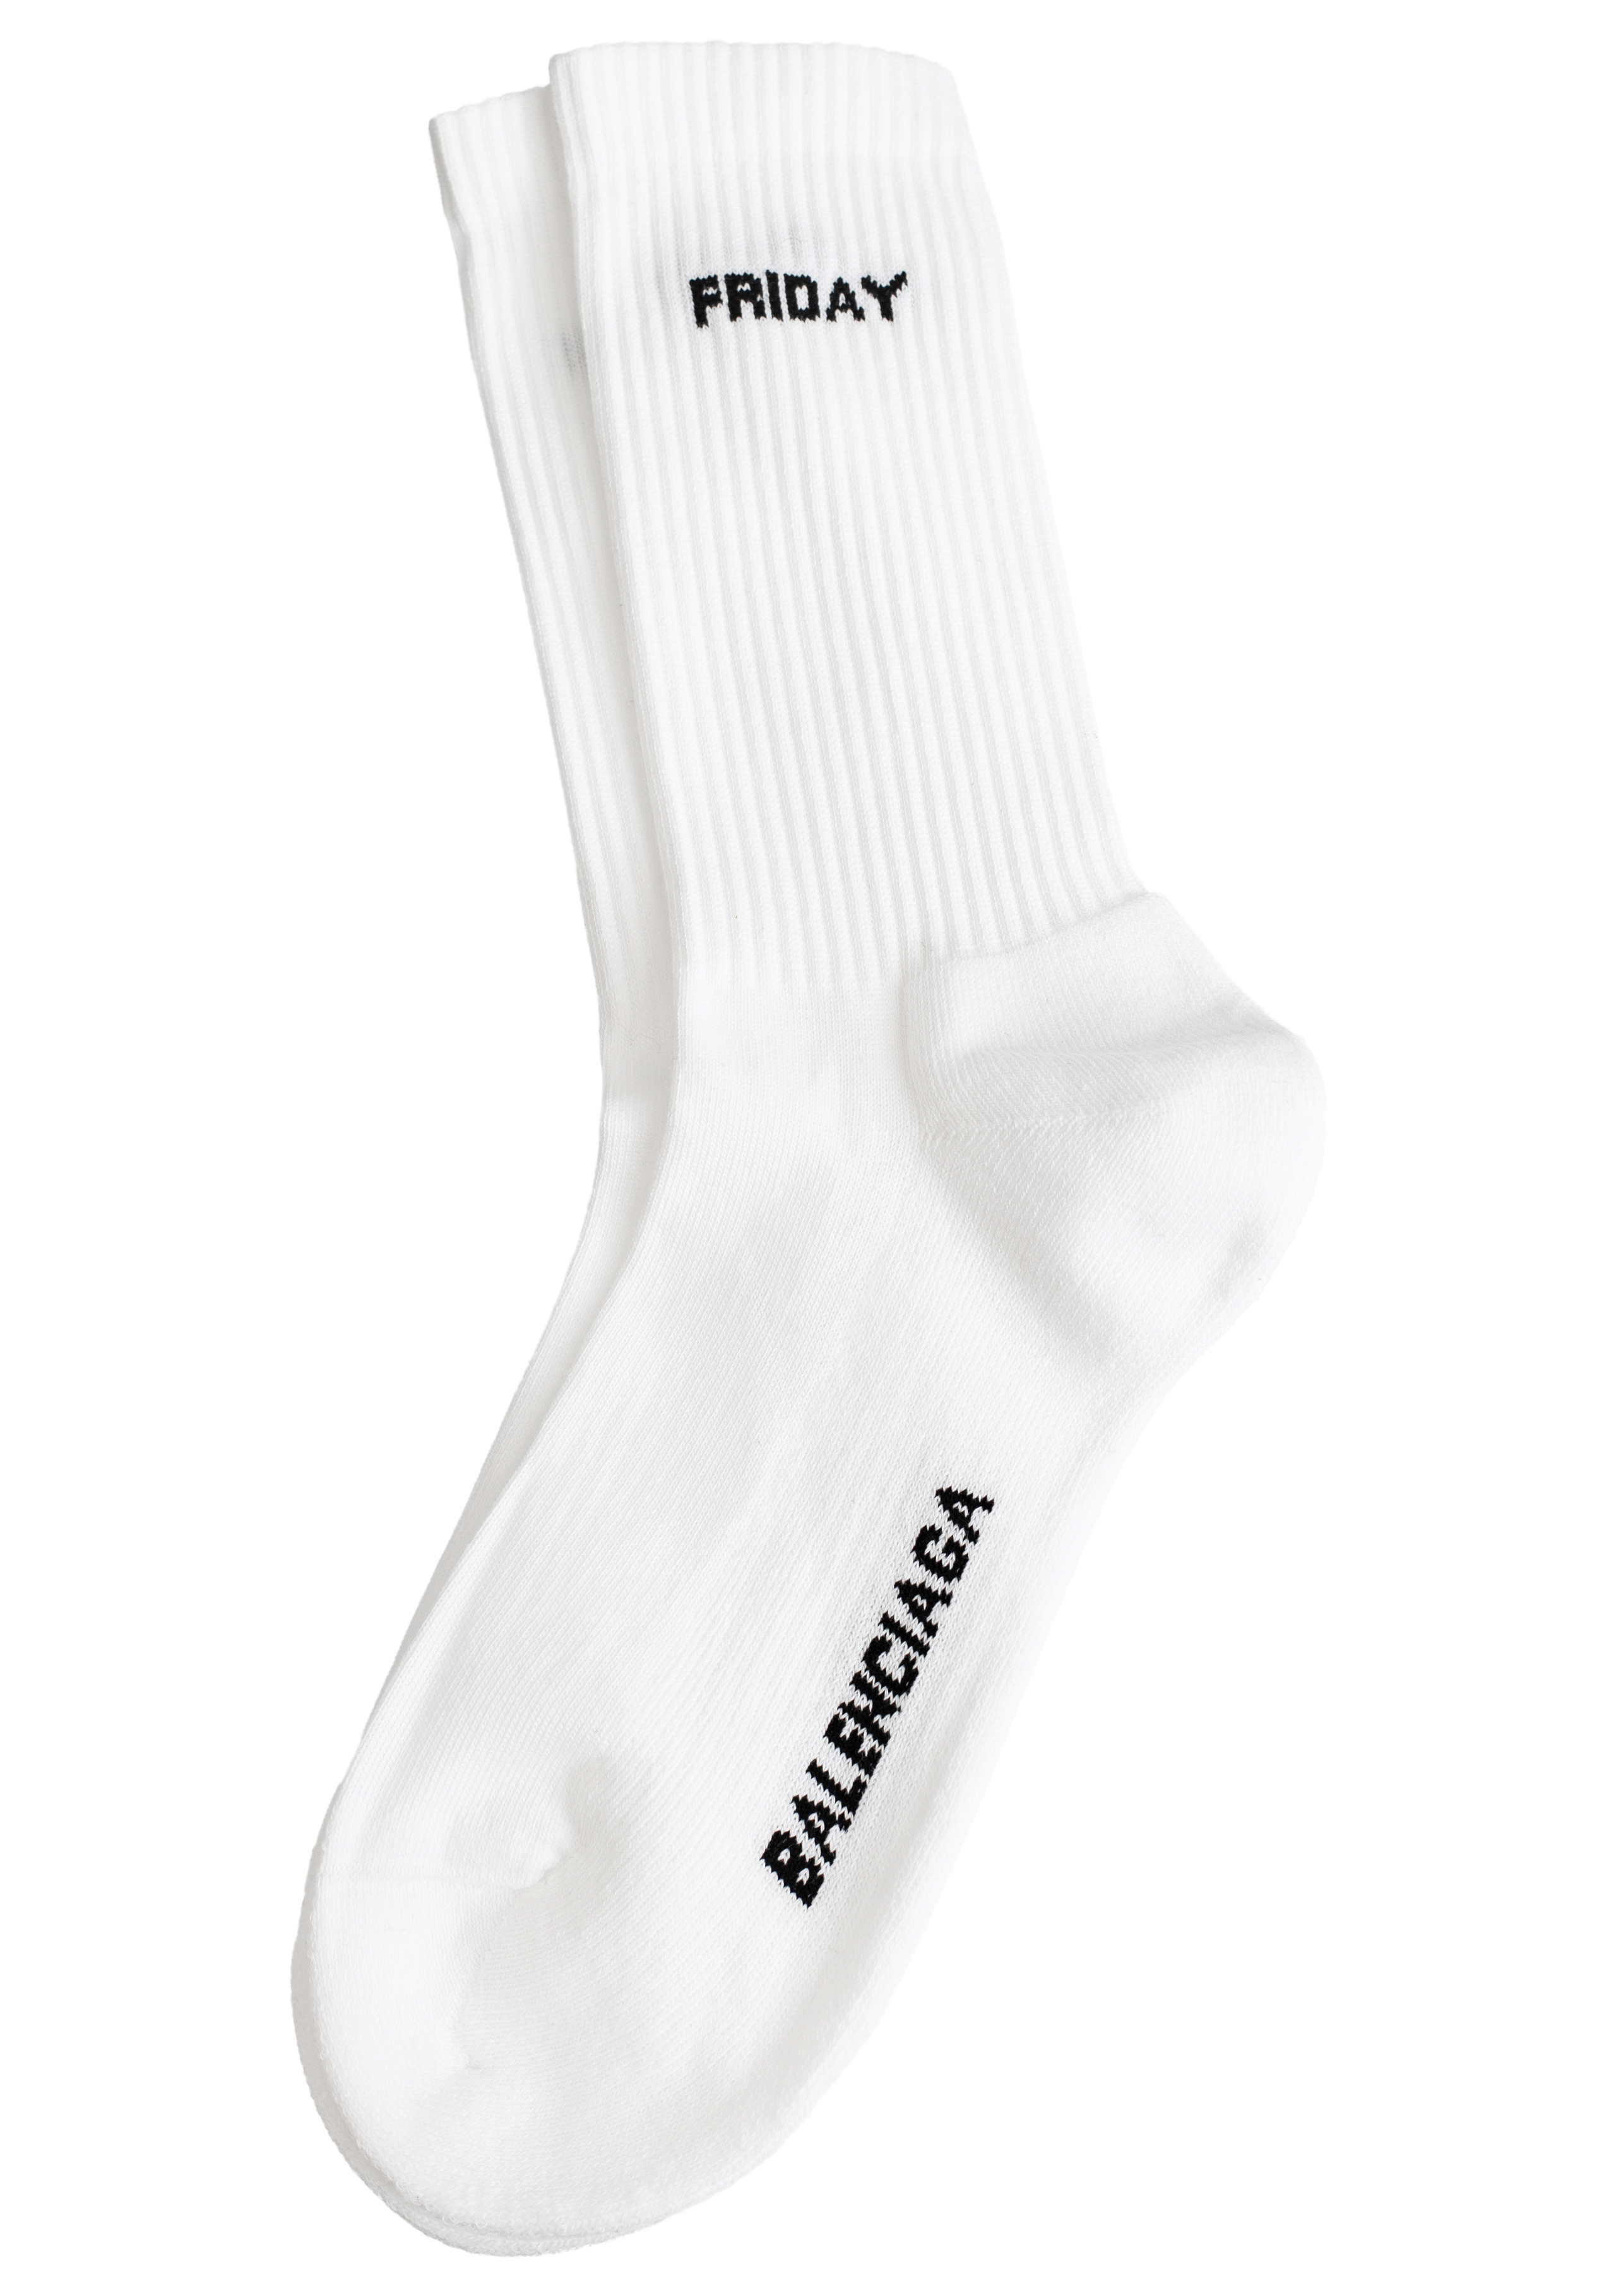 Buy Balenciaga men 7 days socks pack in white for $702 online on 